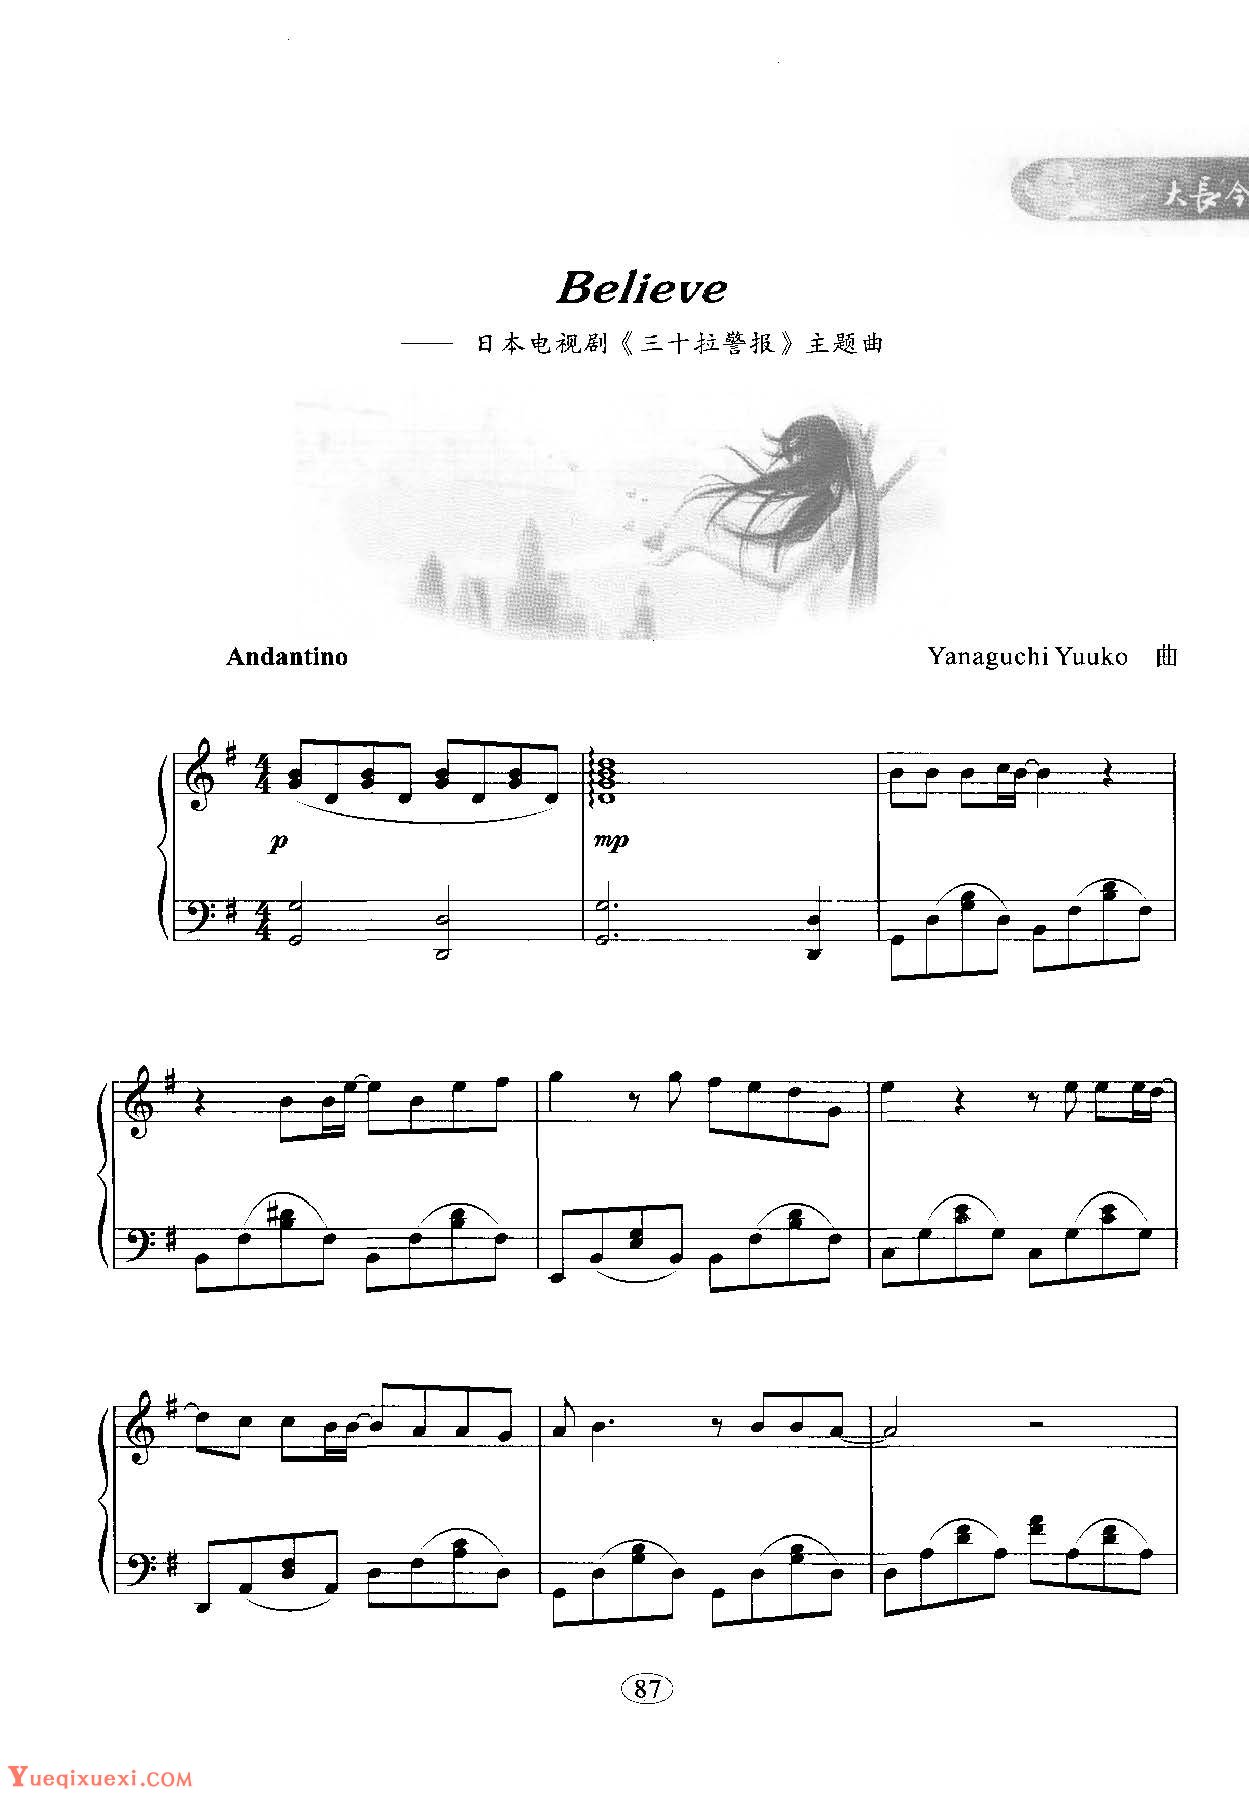 韩日剧音乐钢琴曲：Believe 日本电视剧《三十拉警报》主题曲